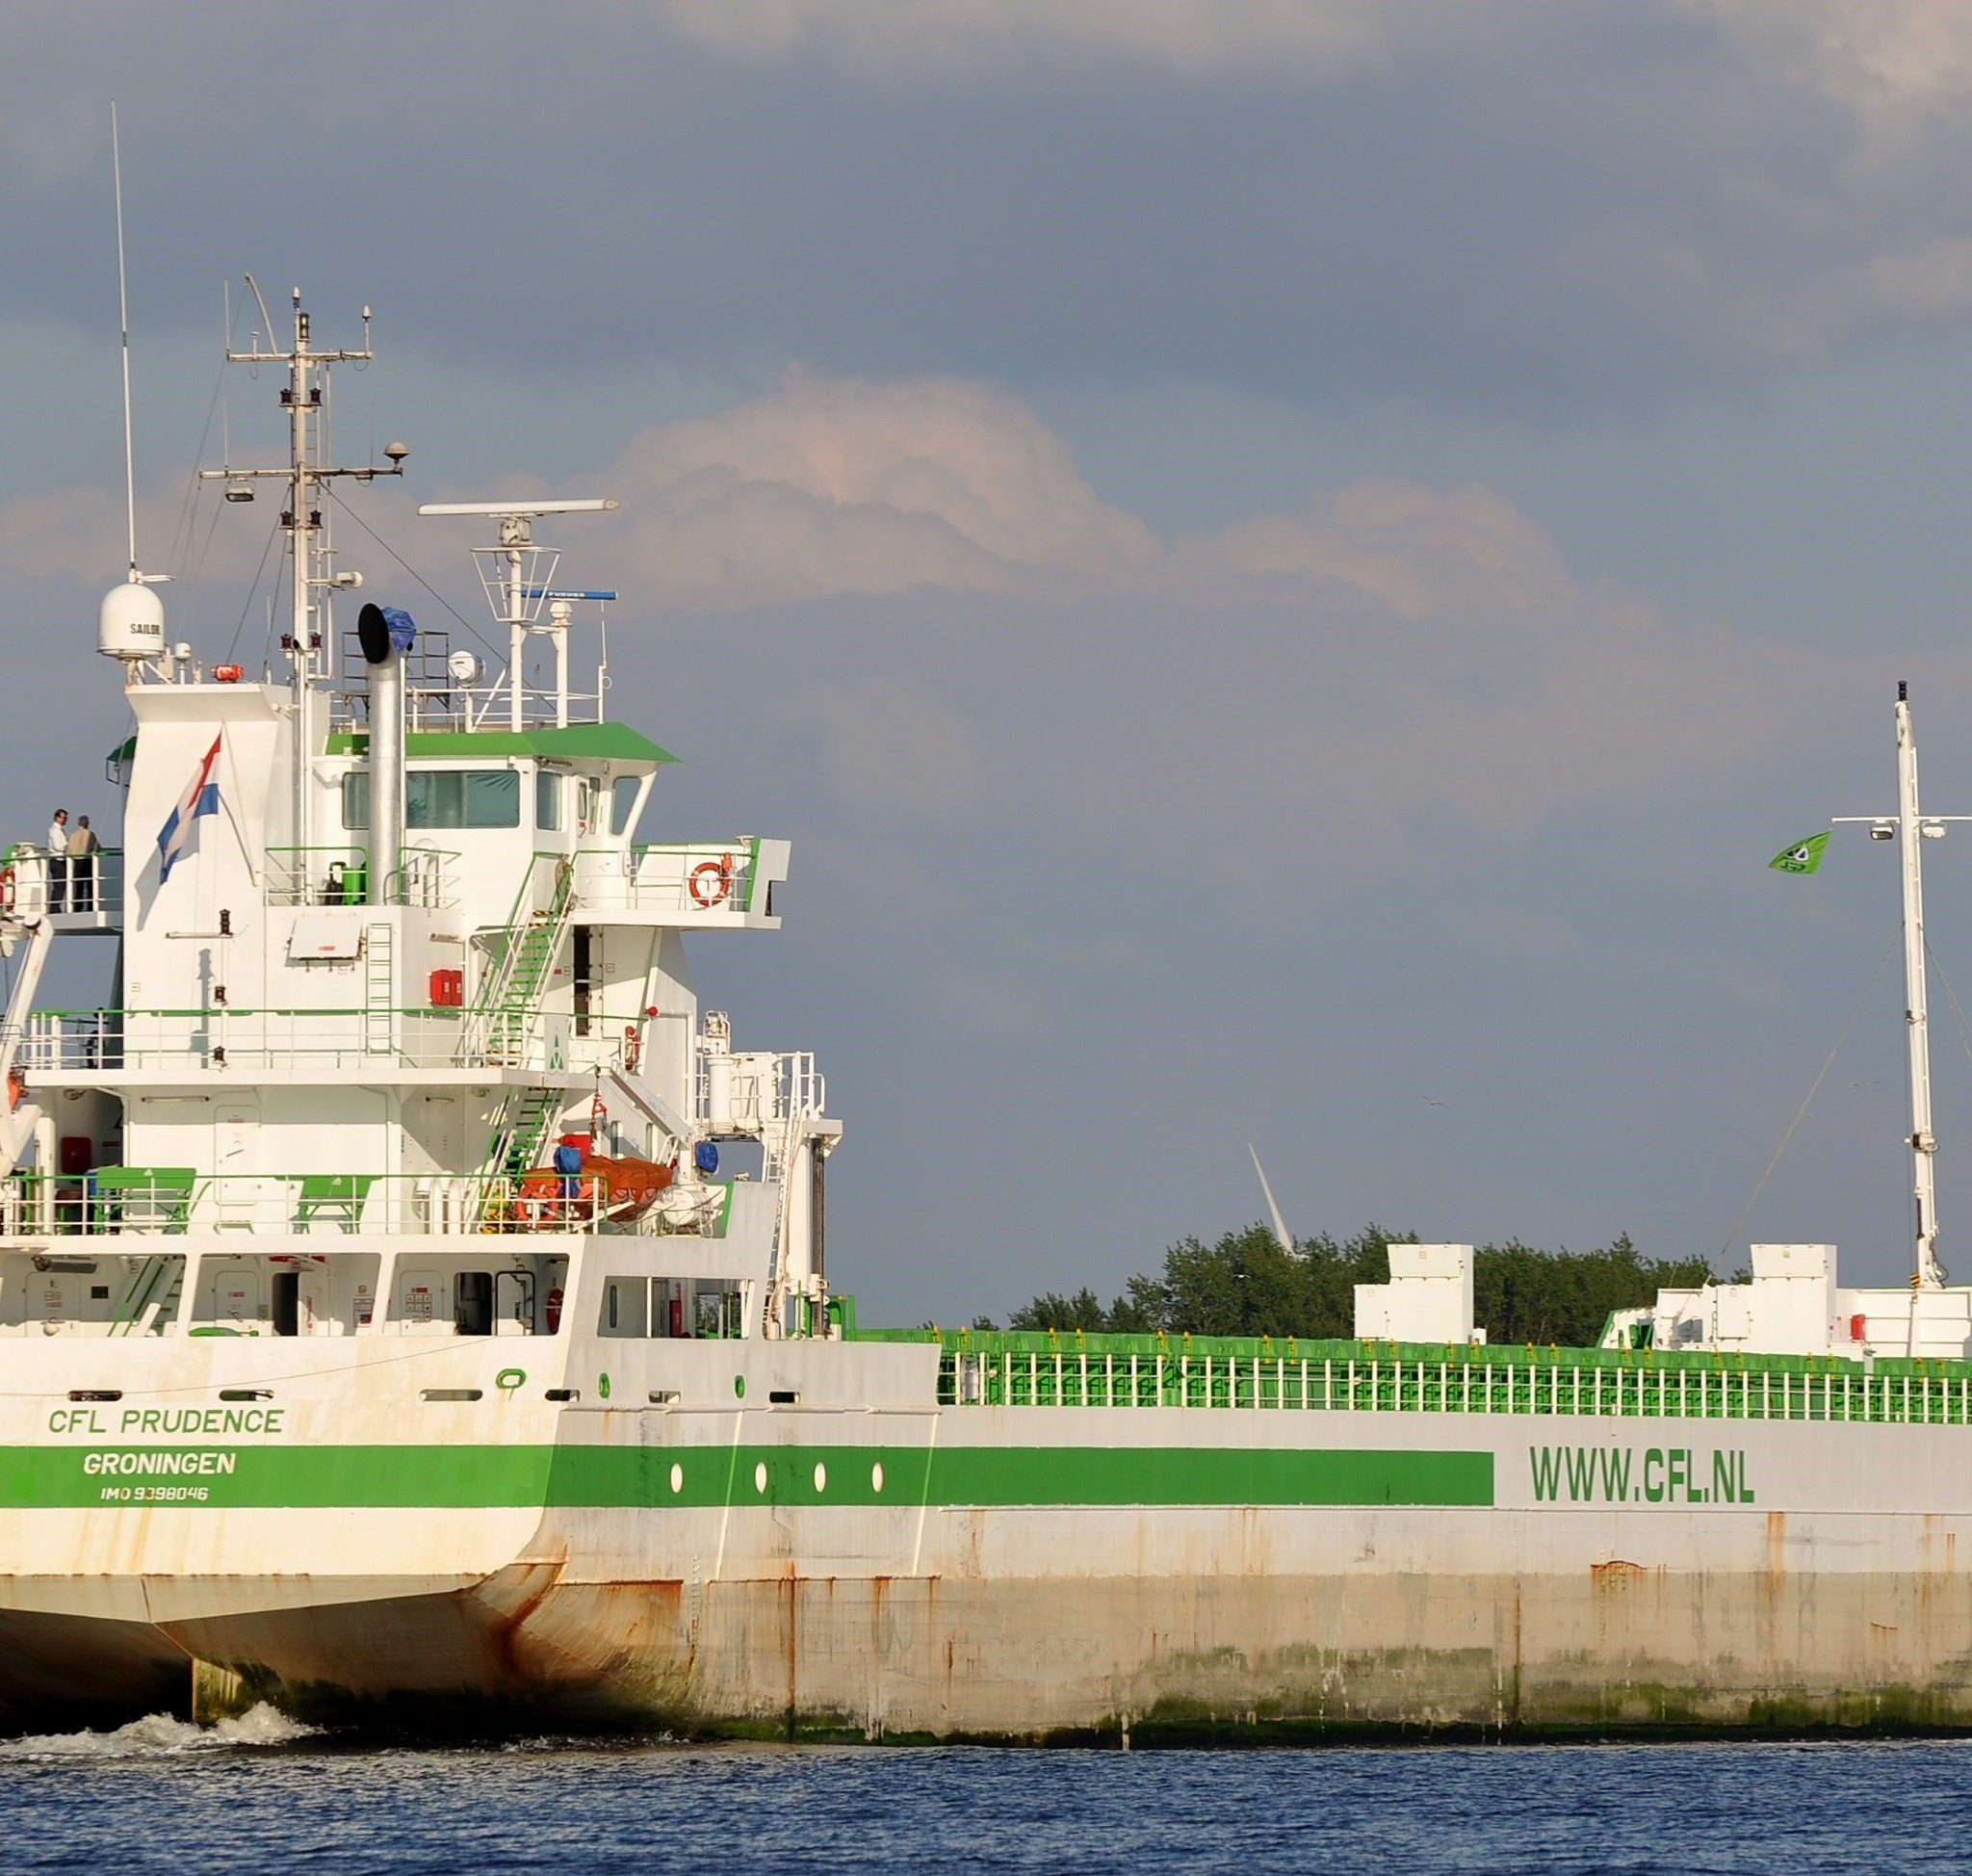 De CFL Prudence, hier gespot op het Noordzeekanaal, is verkocht naar Rusland. (Foto Marcel Coster)